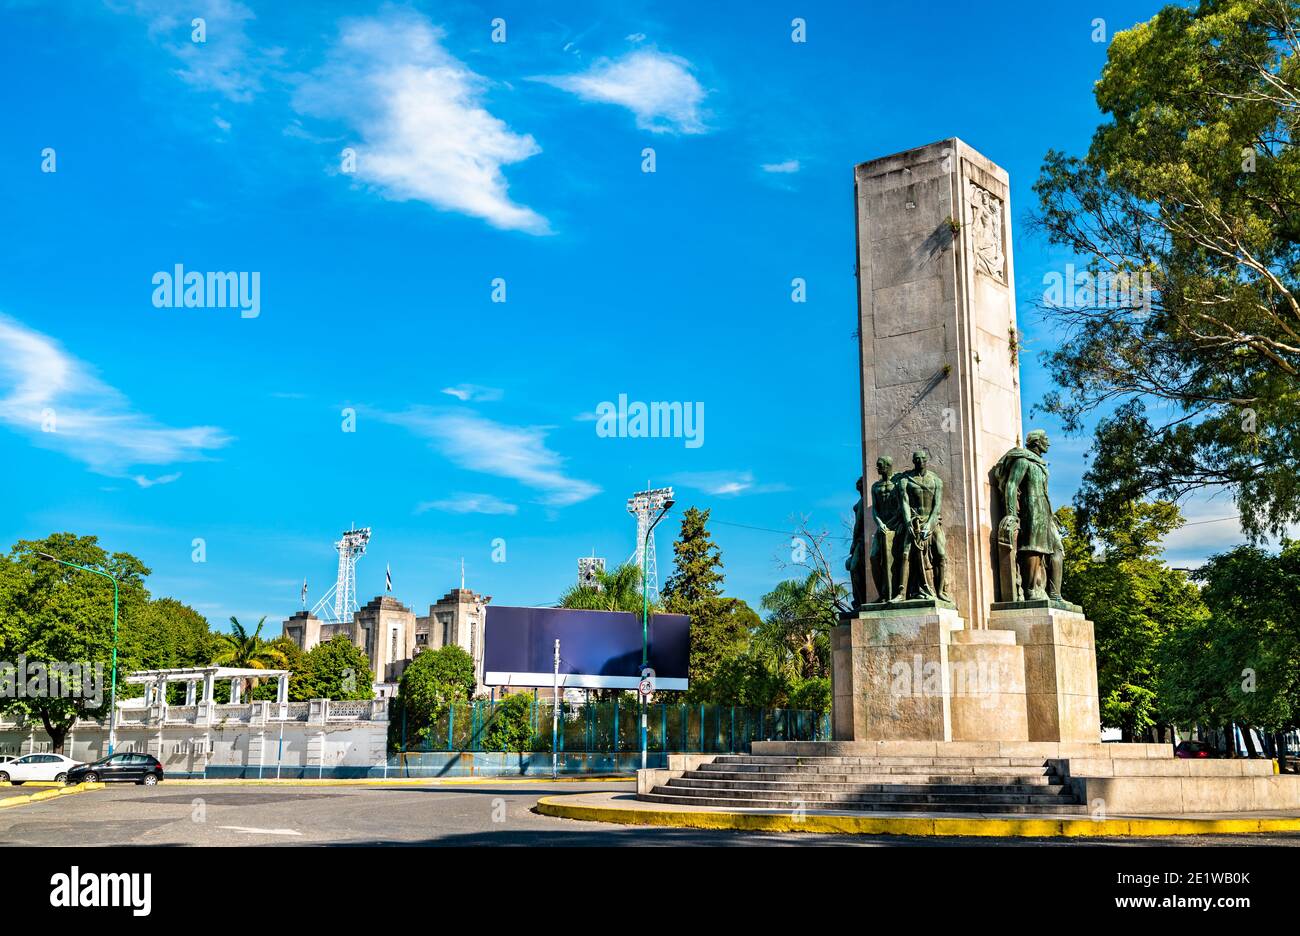 Monumento a Bartolome Mitre a la Plata, Argentina Foto Stock